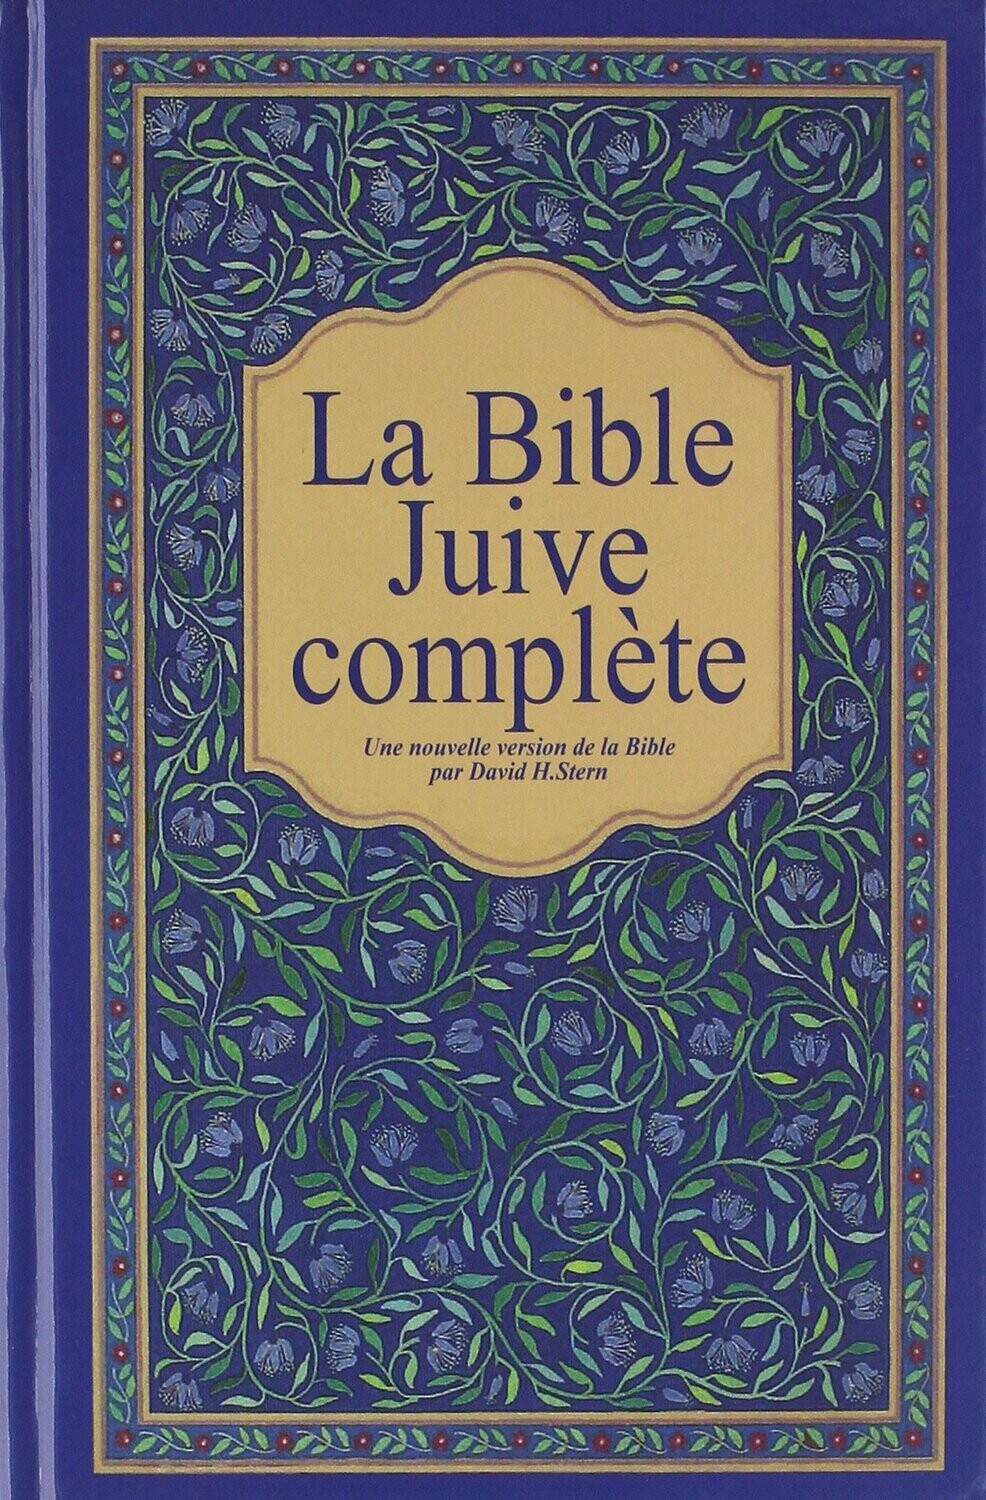 Bible juive complète 
Une nouvelle version de la Bible par David H. Stern - Couverture rigide, tranches blanches